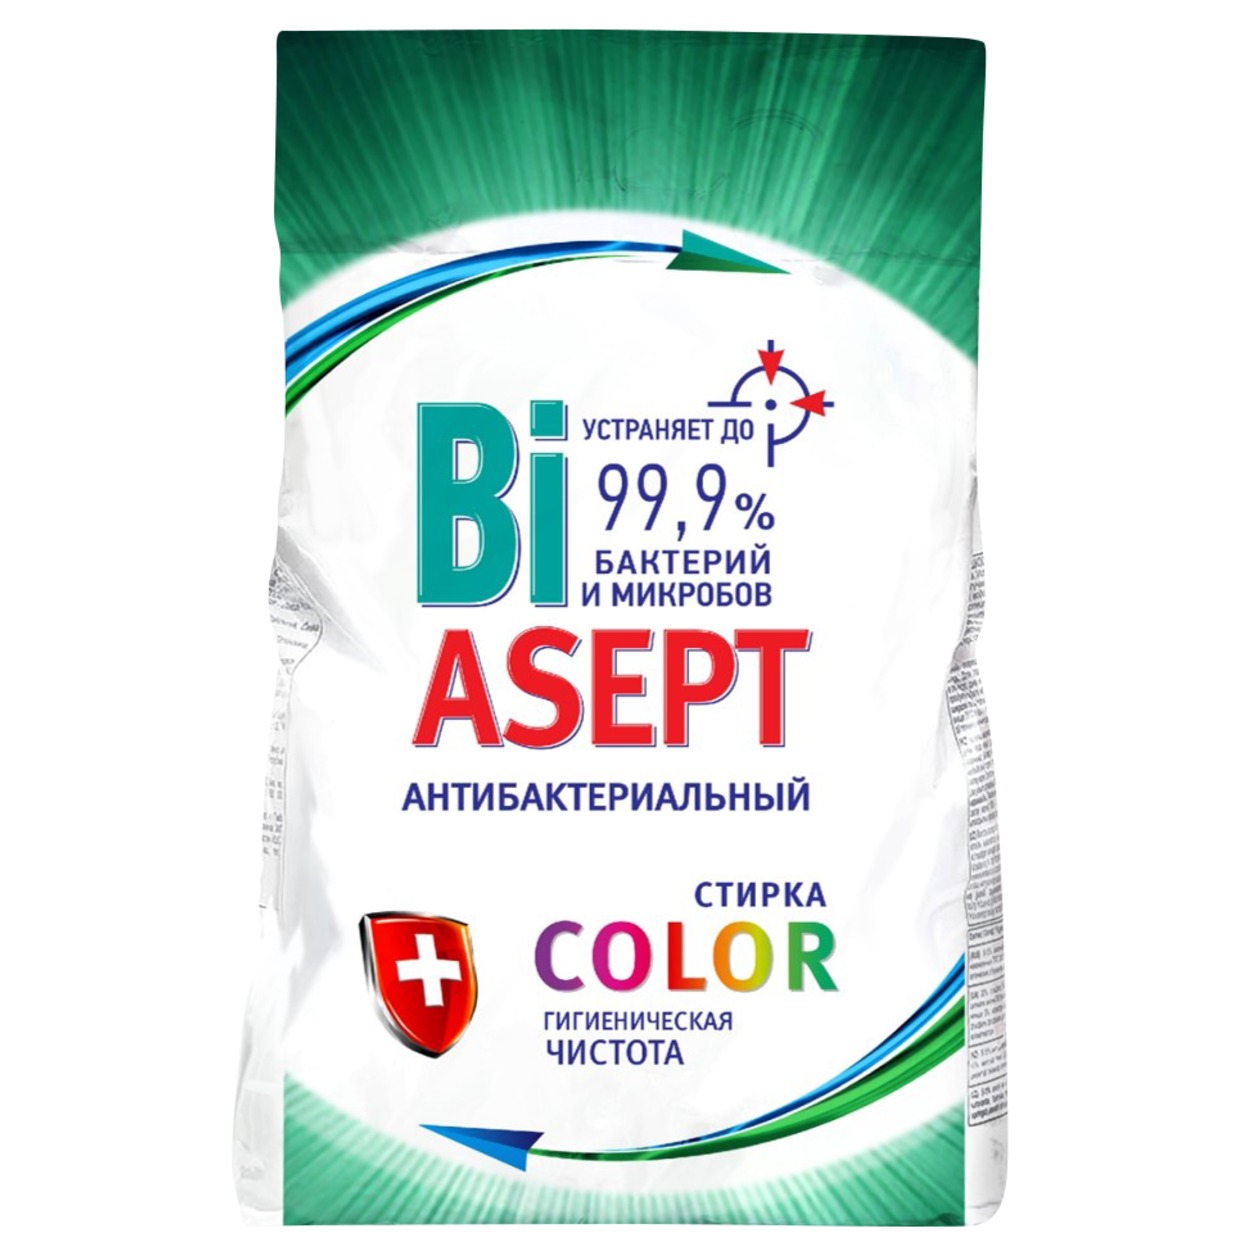 Средство для стирки порошкообразное универсальное "BiASEPT Color Automat" с антибактериальным эффектом2500г по акции в Пятерочке